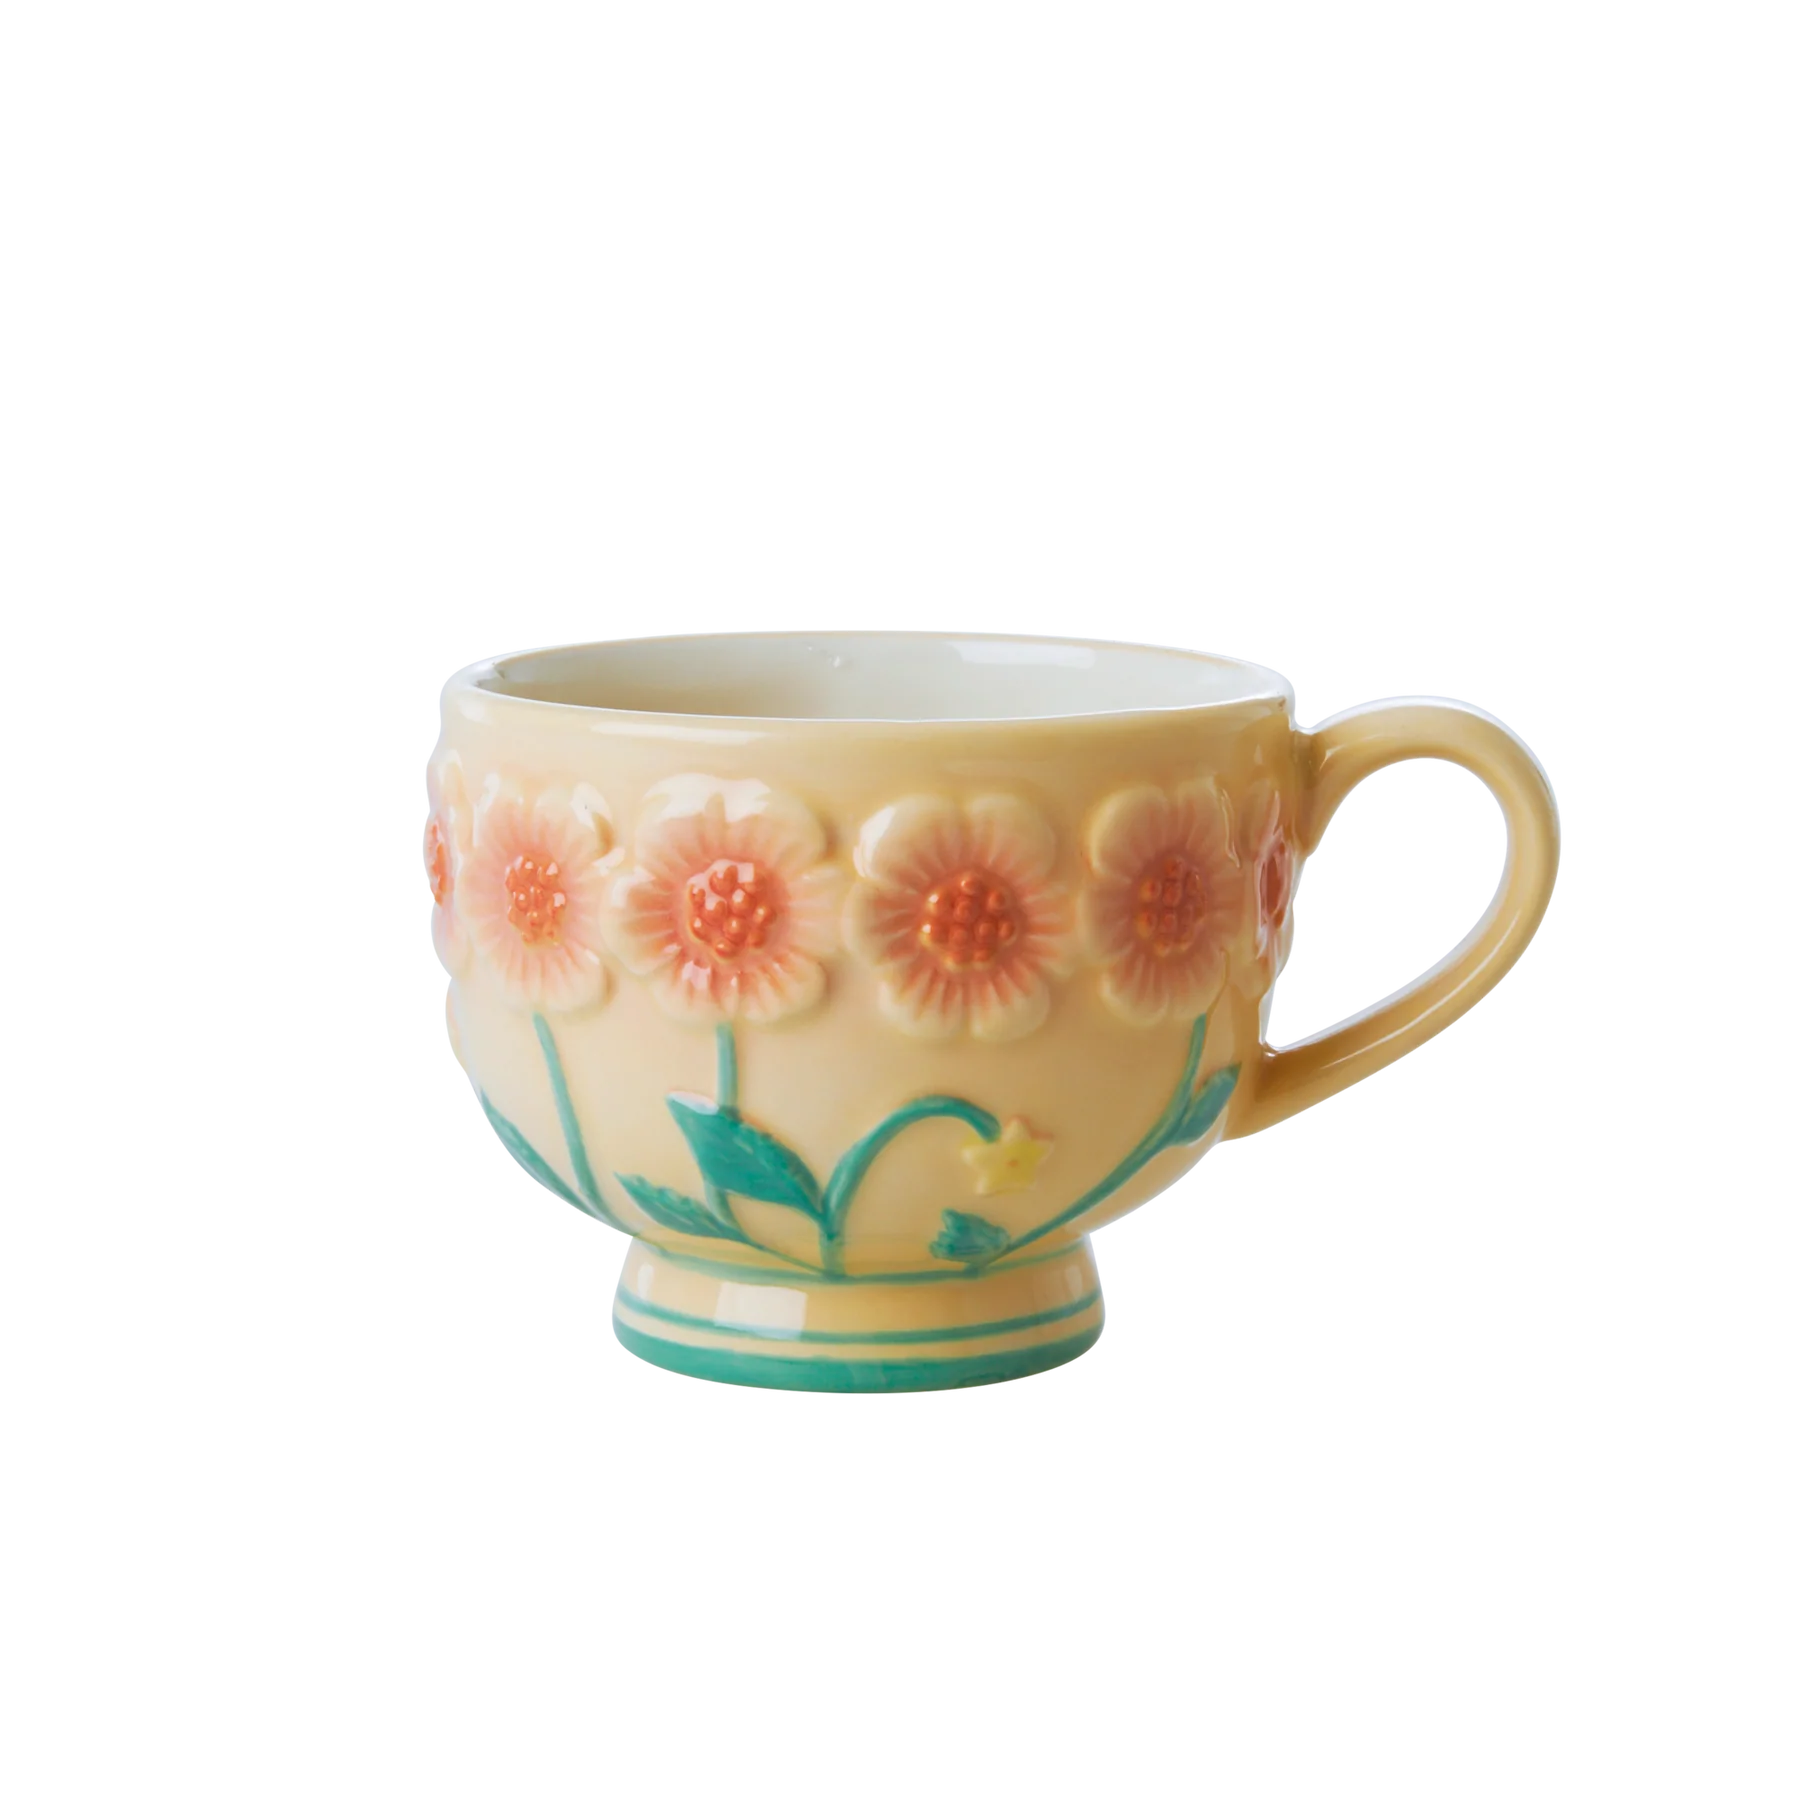 rice Ceramic Mug with Embossed Flower Design in Cream